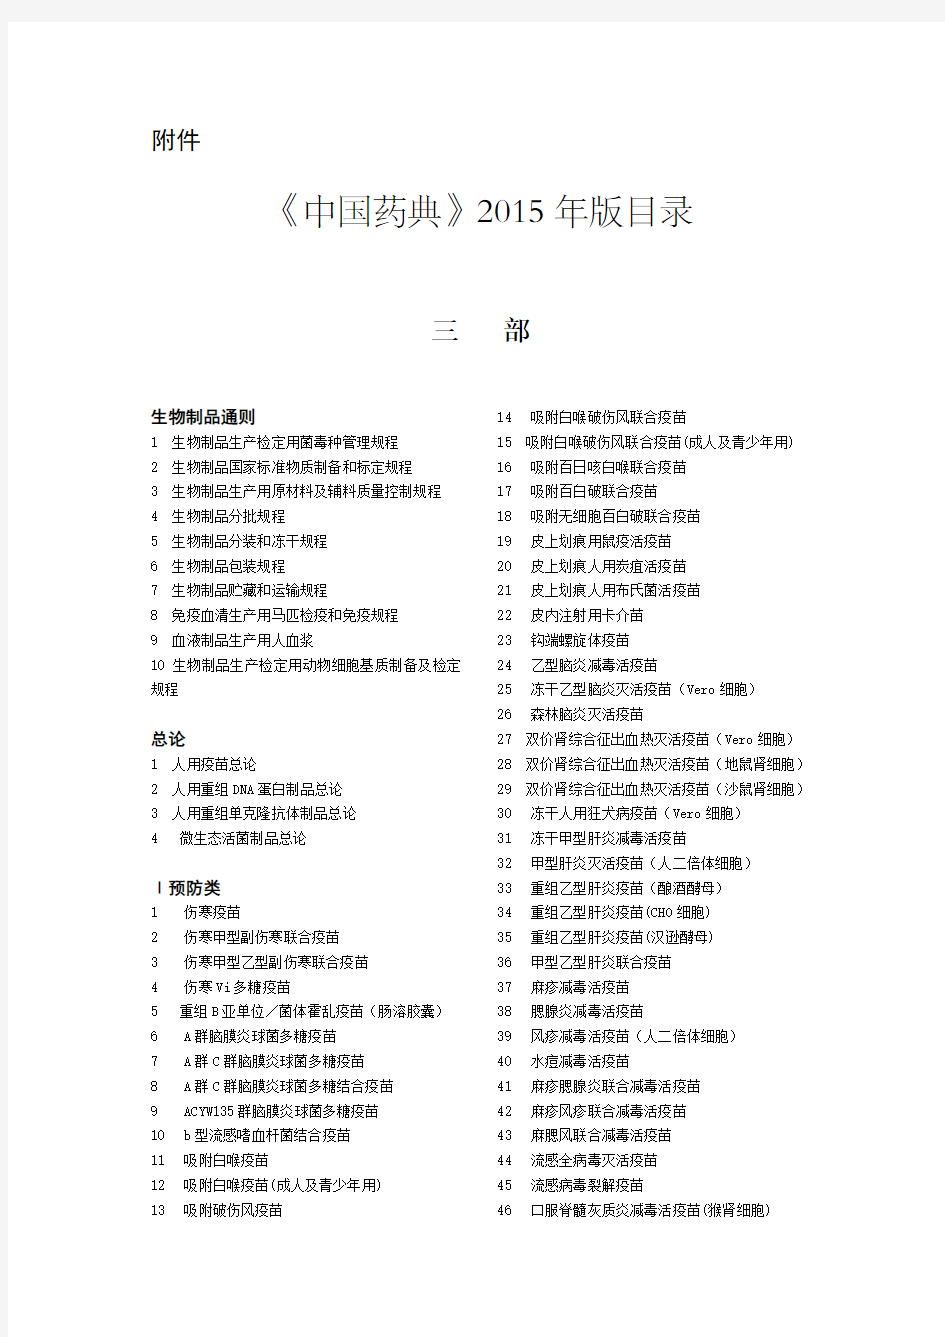 《中国药典》2015年版目录(三部四部)